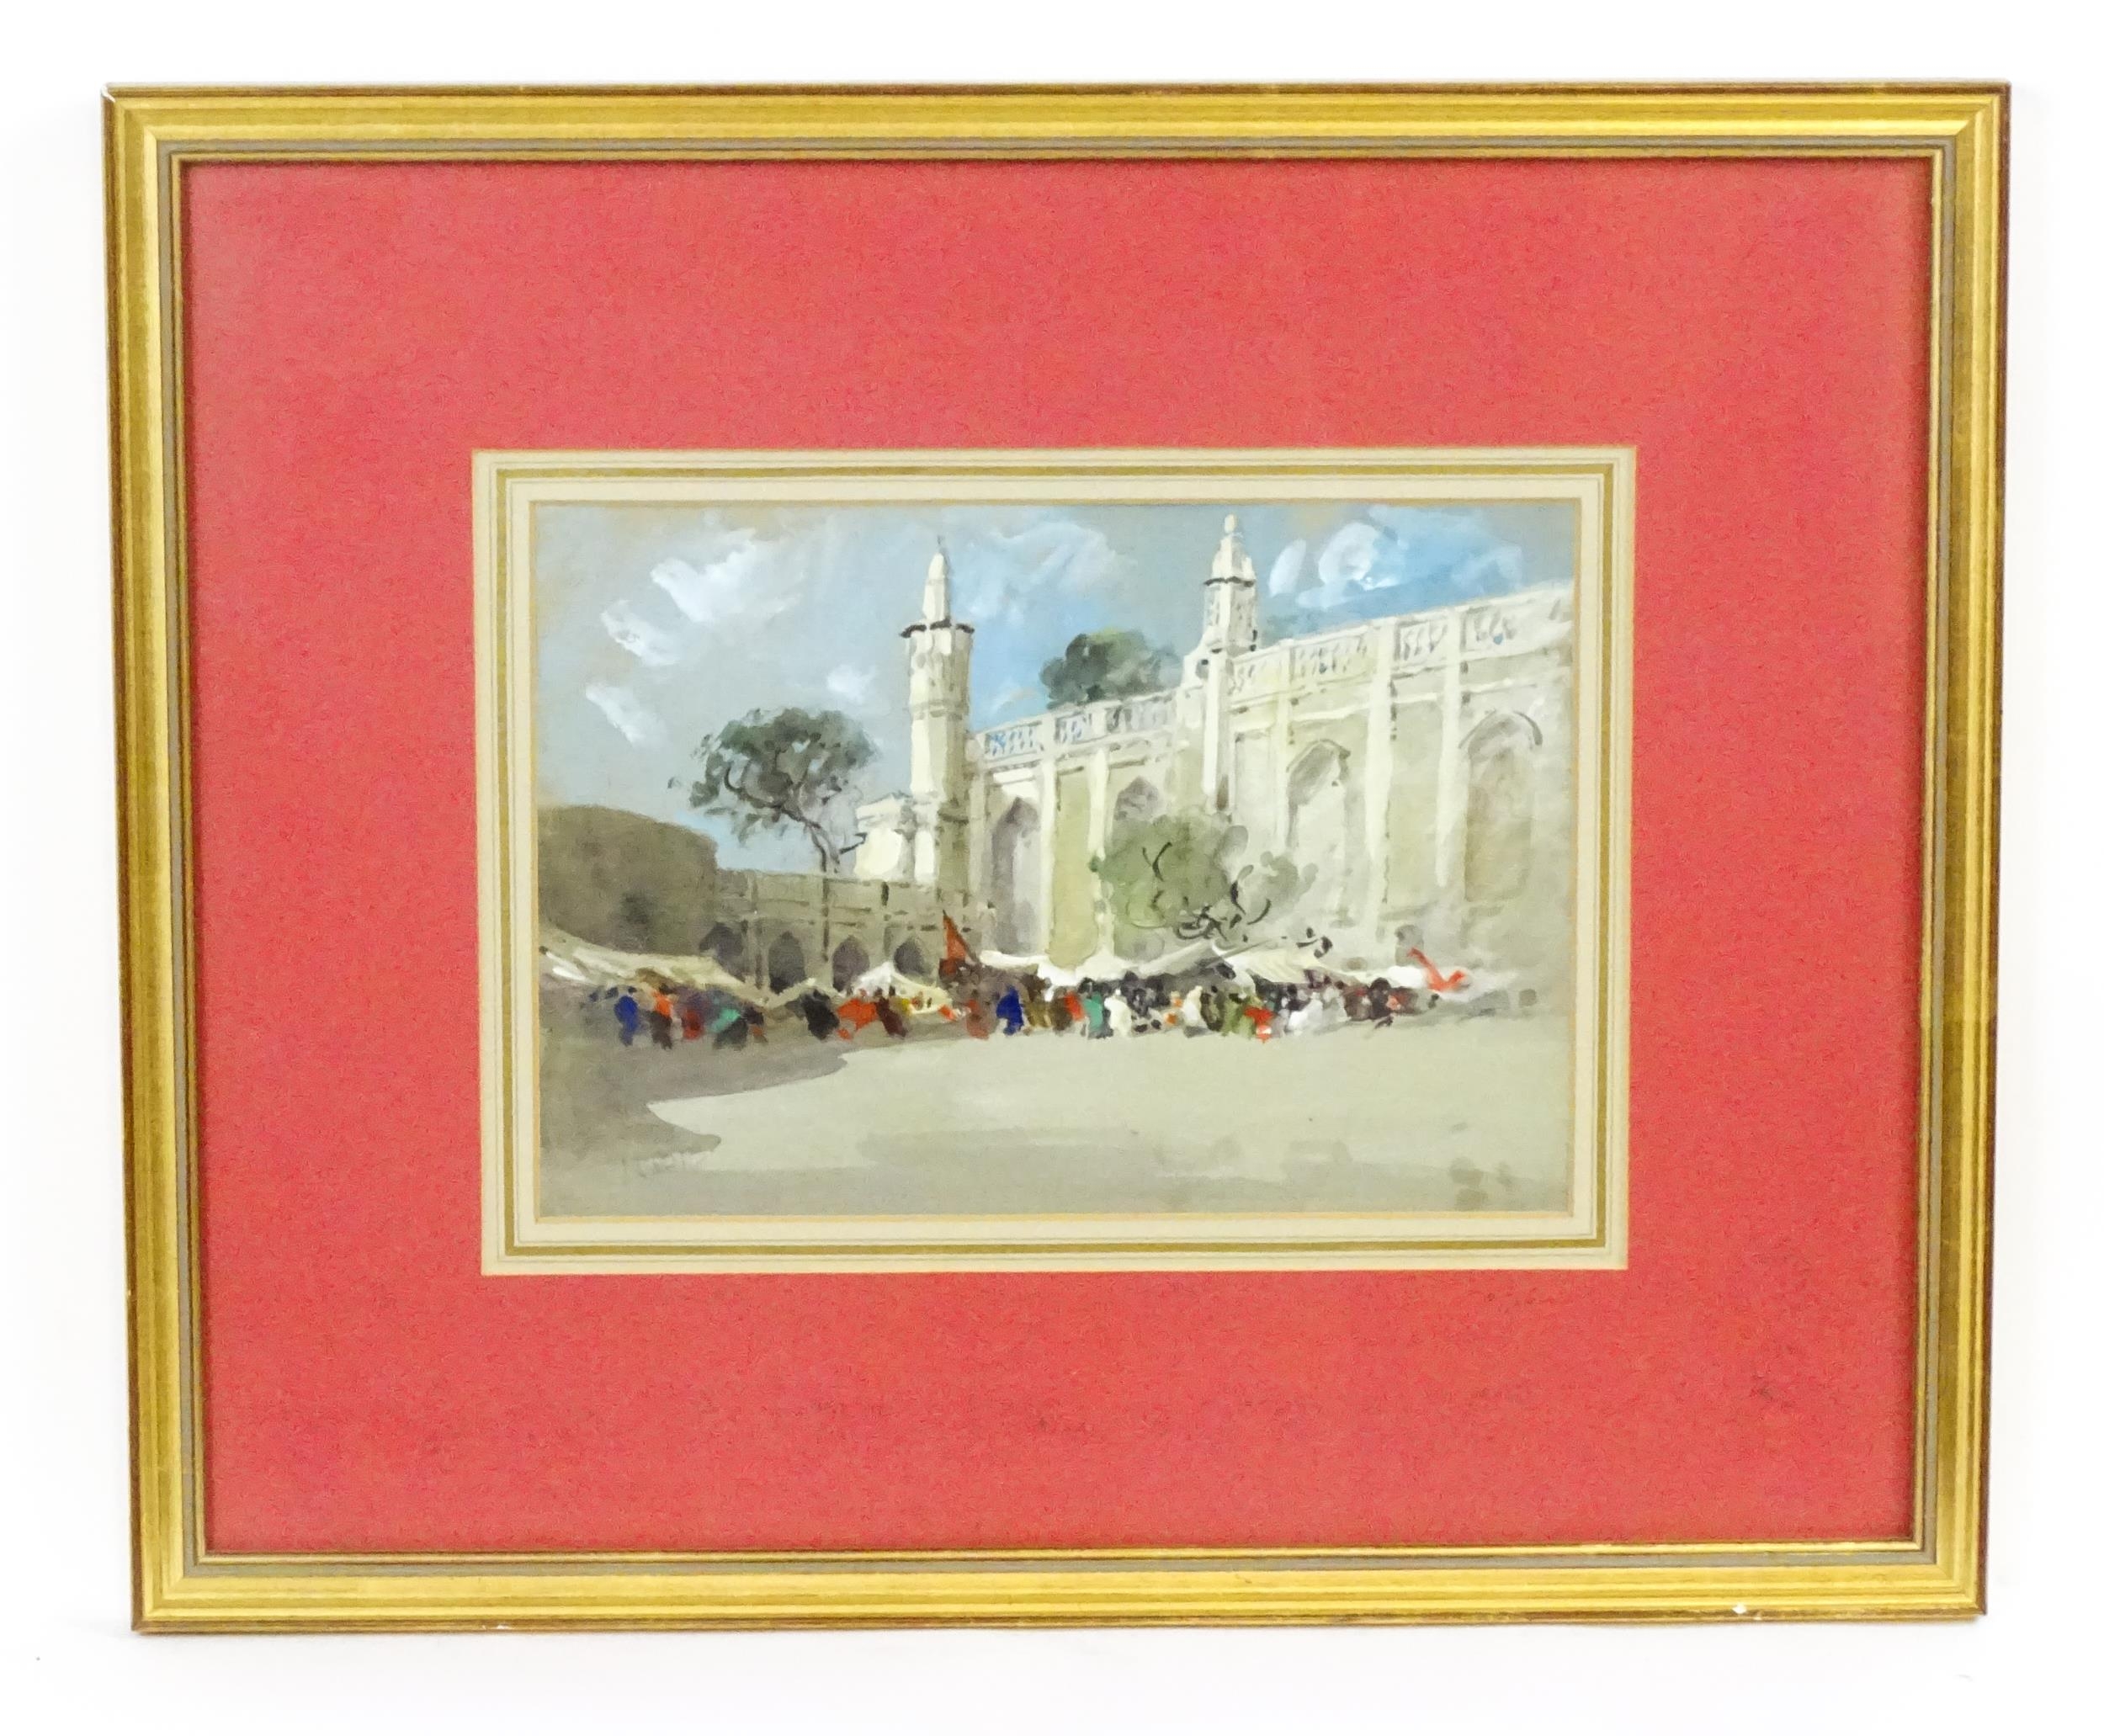 Hercules Brabazon Brabazon (1821-1906), Watercolour, Figures at a market bazaar with Arabian